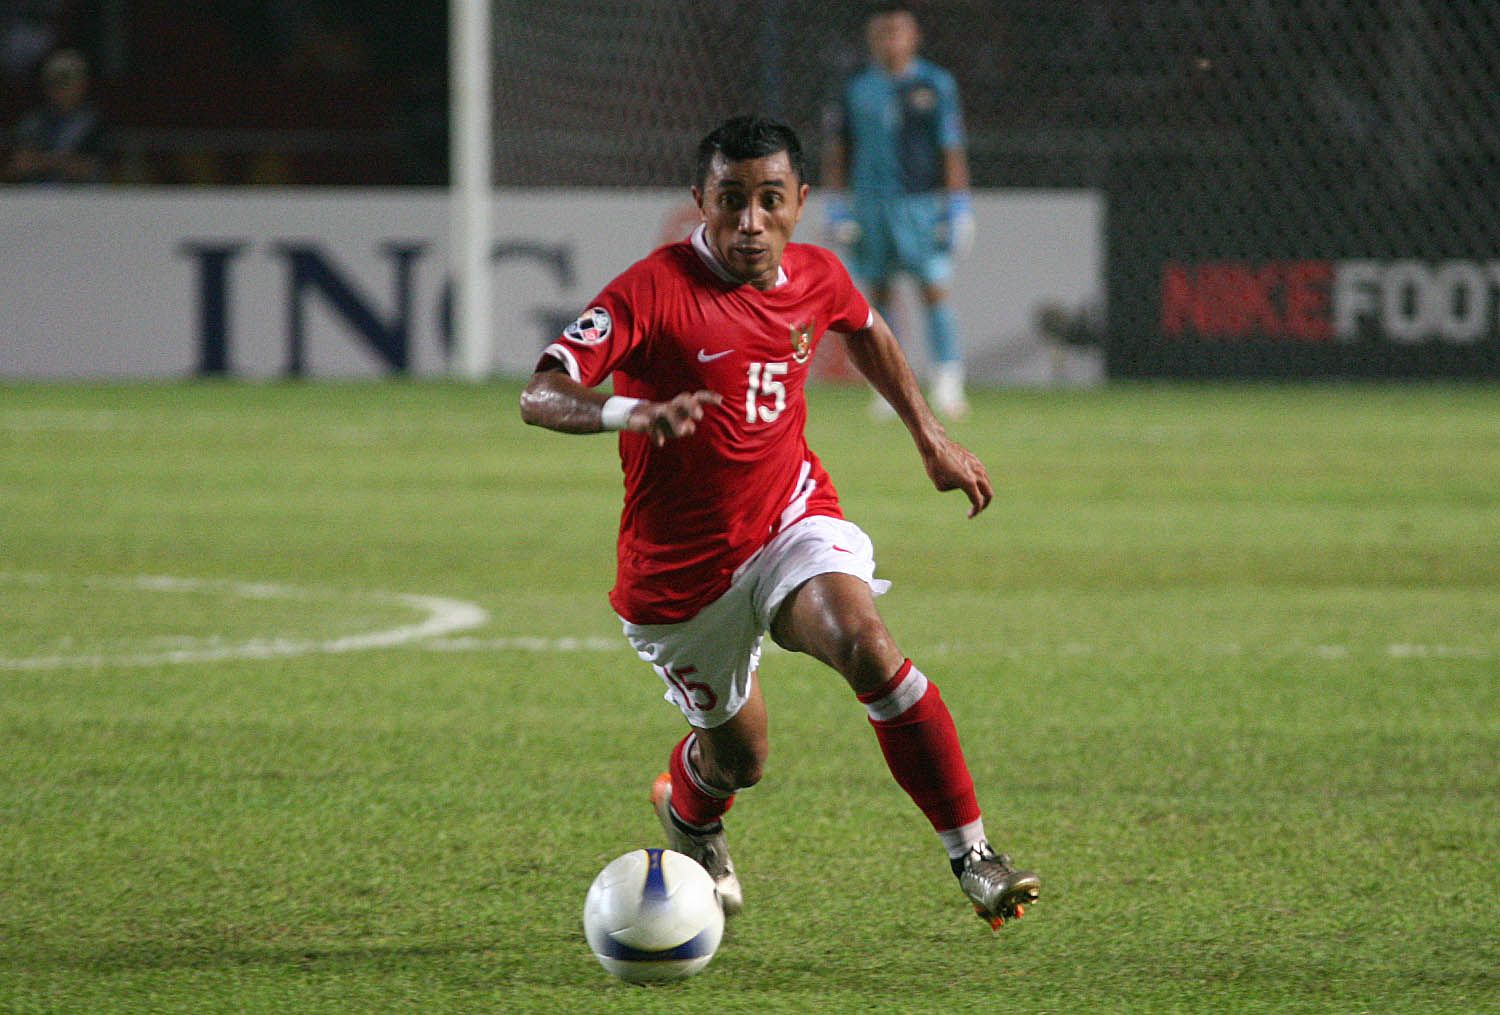 Firman Utina saat membela tim nasional Indonesia di ajang Piala Asia 2007.